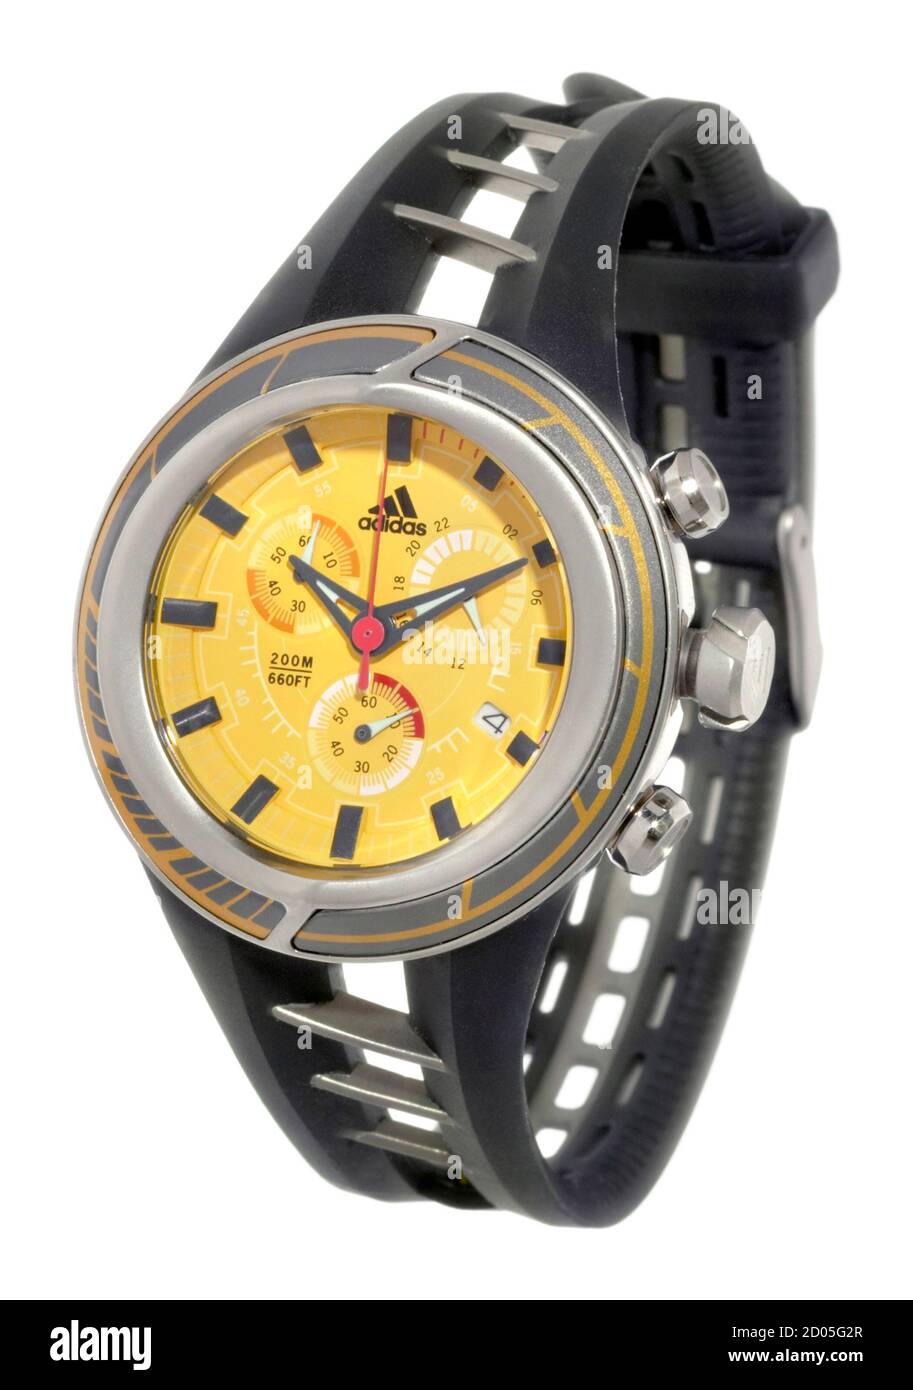 Montre-bracelet adidas activewear noire et jaune photographiée sur fond  blanc Photo Stock - Alamy